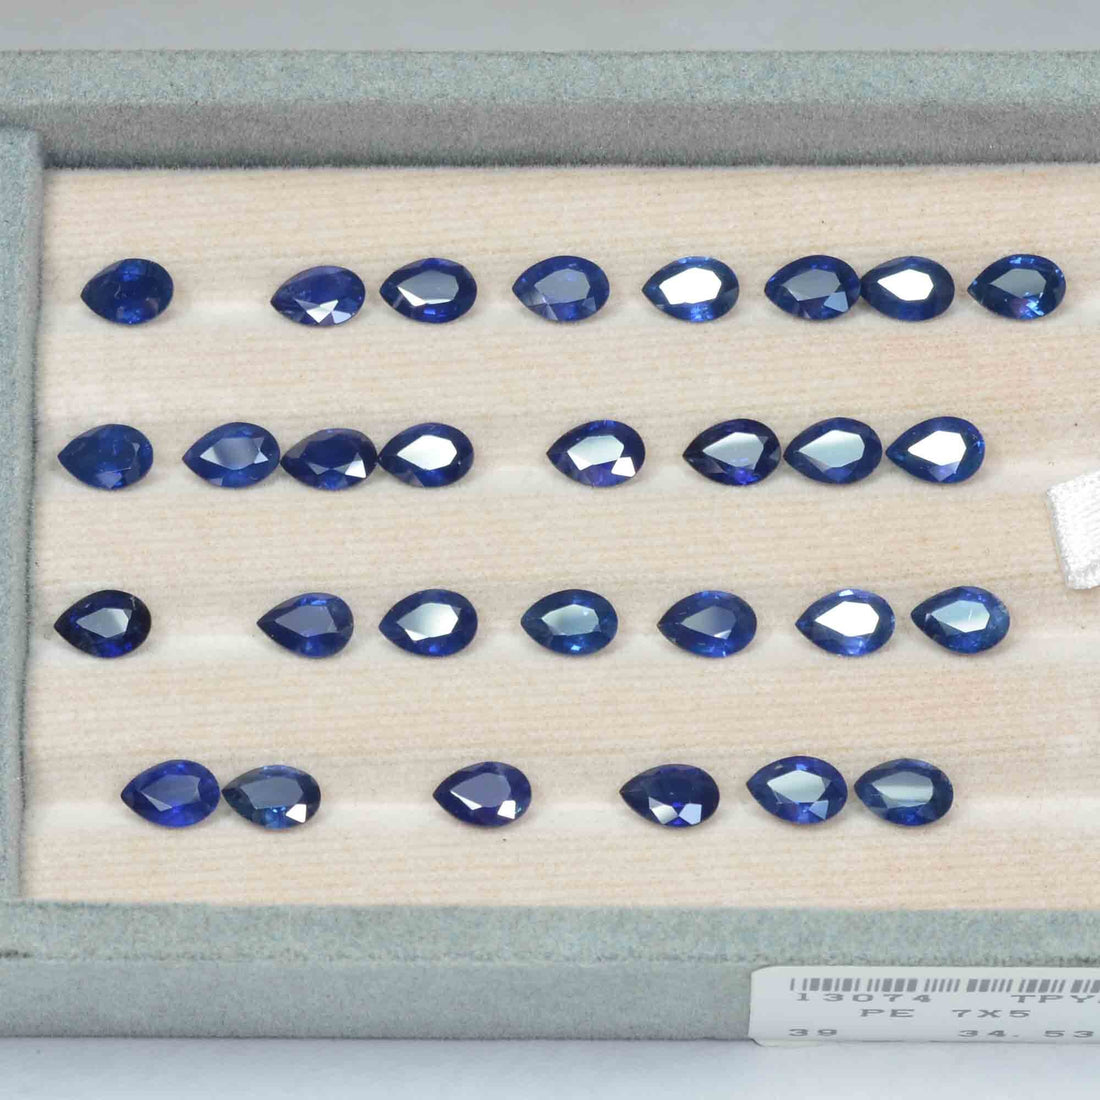 7x5 MM Natural Blue Sapphire Loose Gemstone Pear Cut